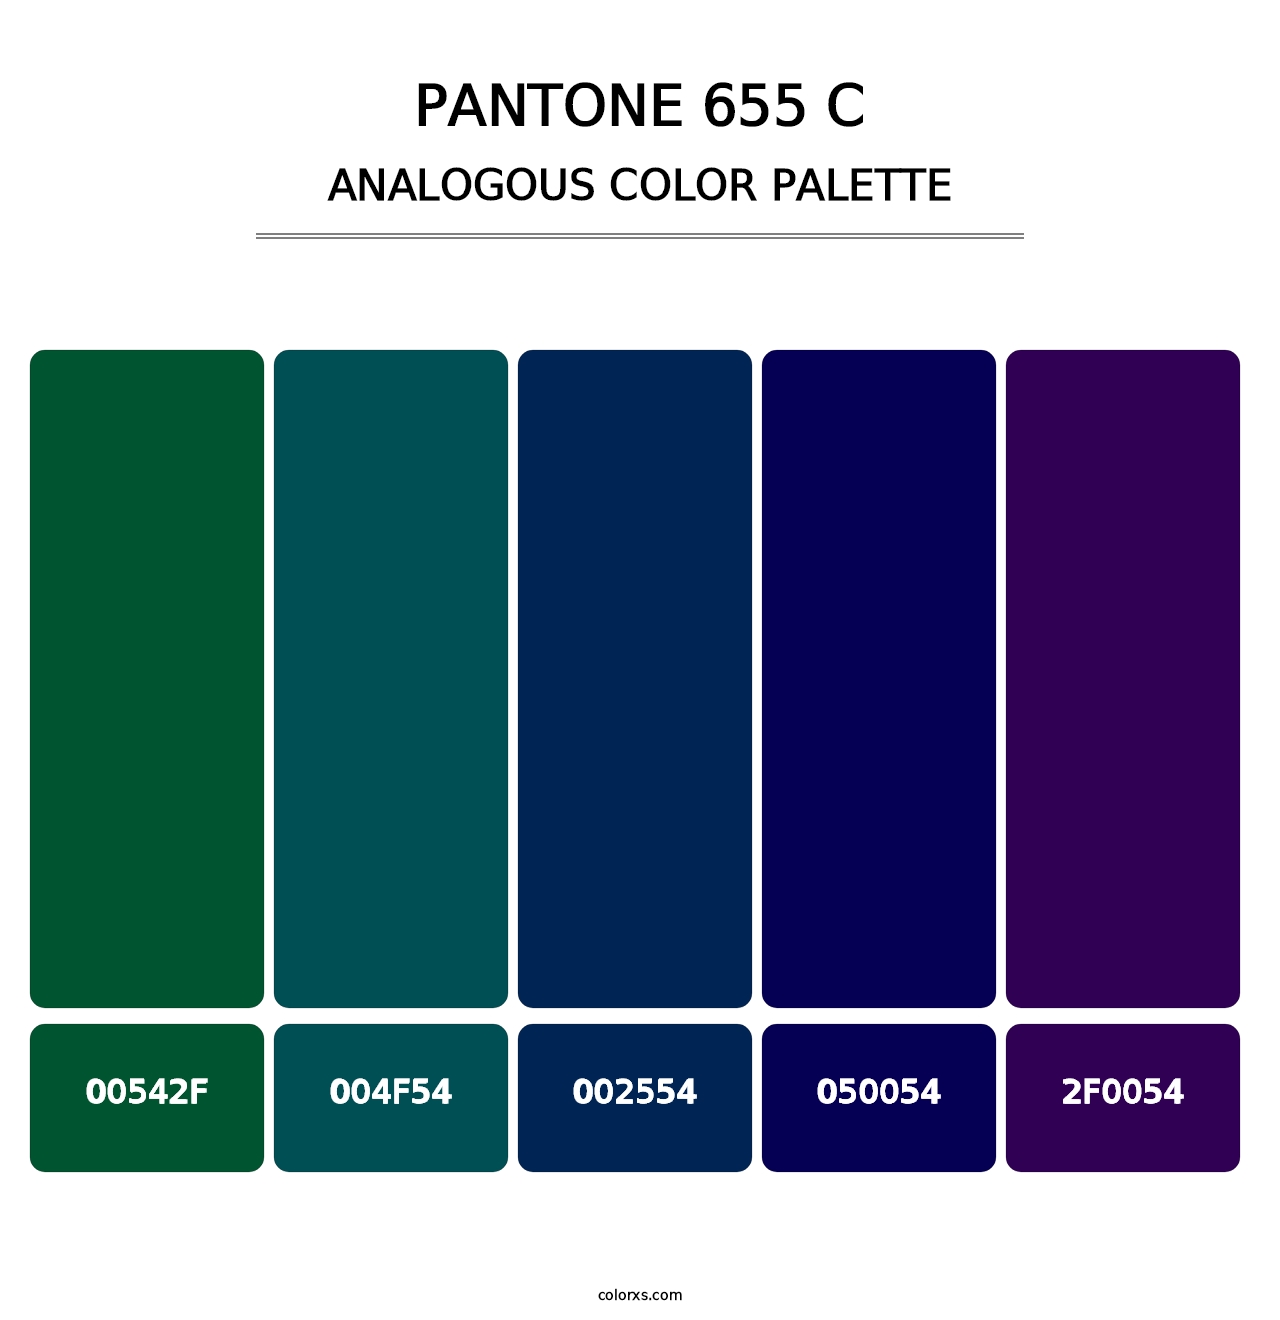 PANTONE 655 C - Analogous Color Palette